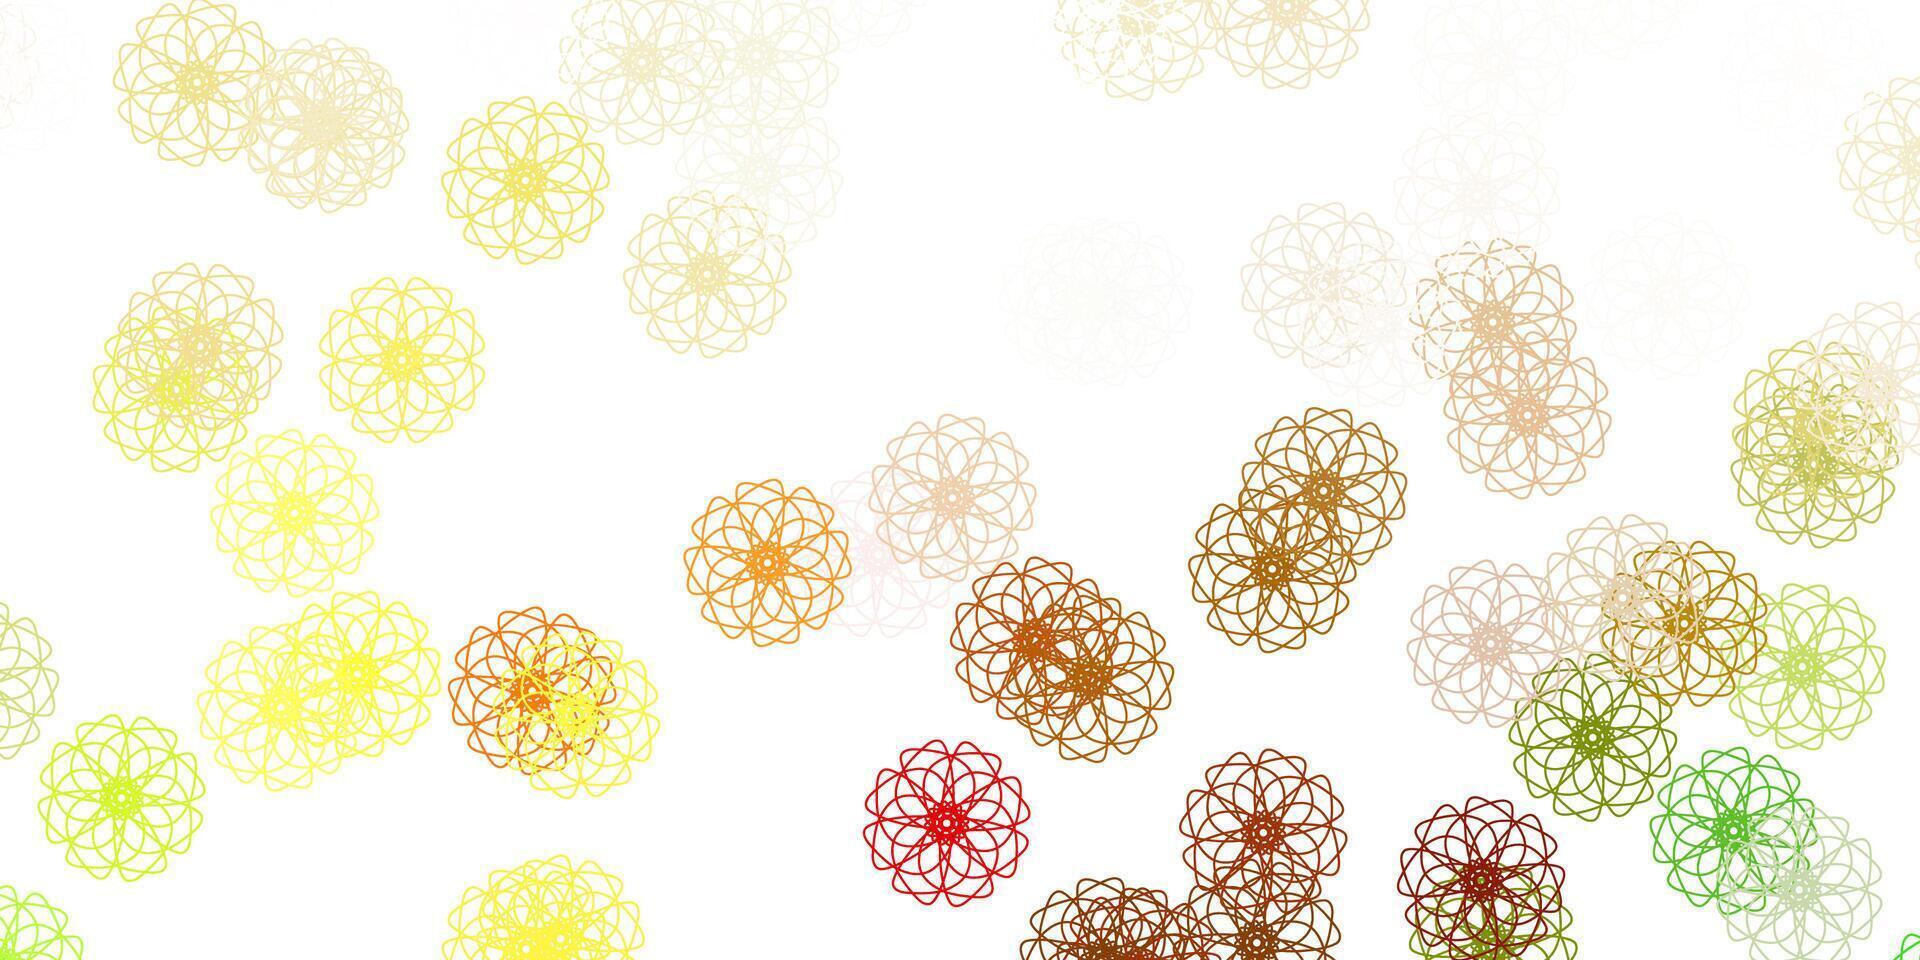 ilustraciones naturales del vector verde claro, amarillo con flores.